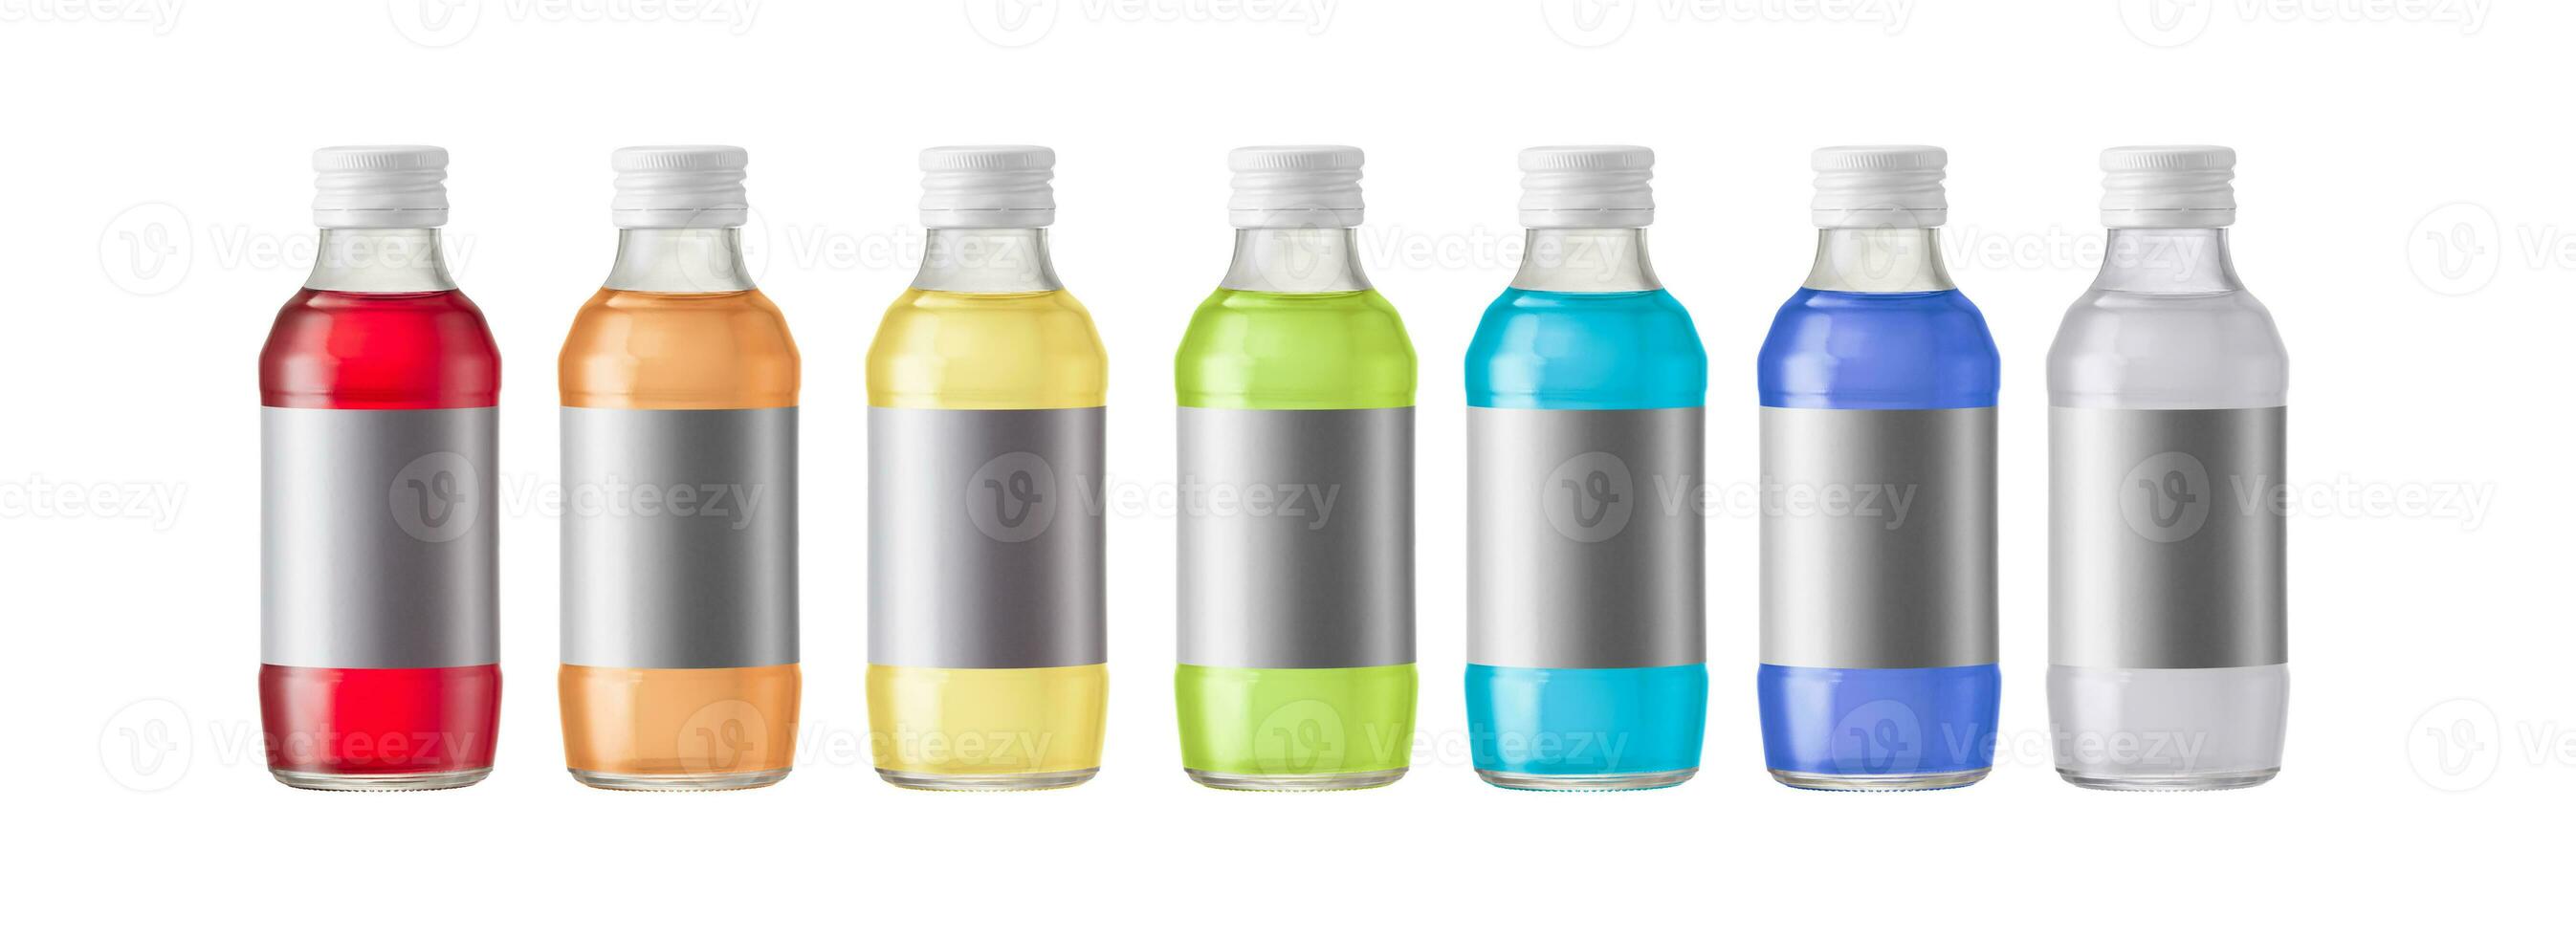 reeks van verschillend gekleurde mineraal zout flessen met leeg etiketten. foto